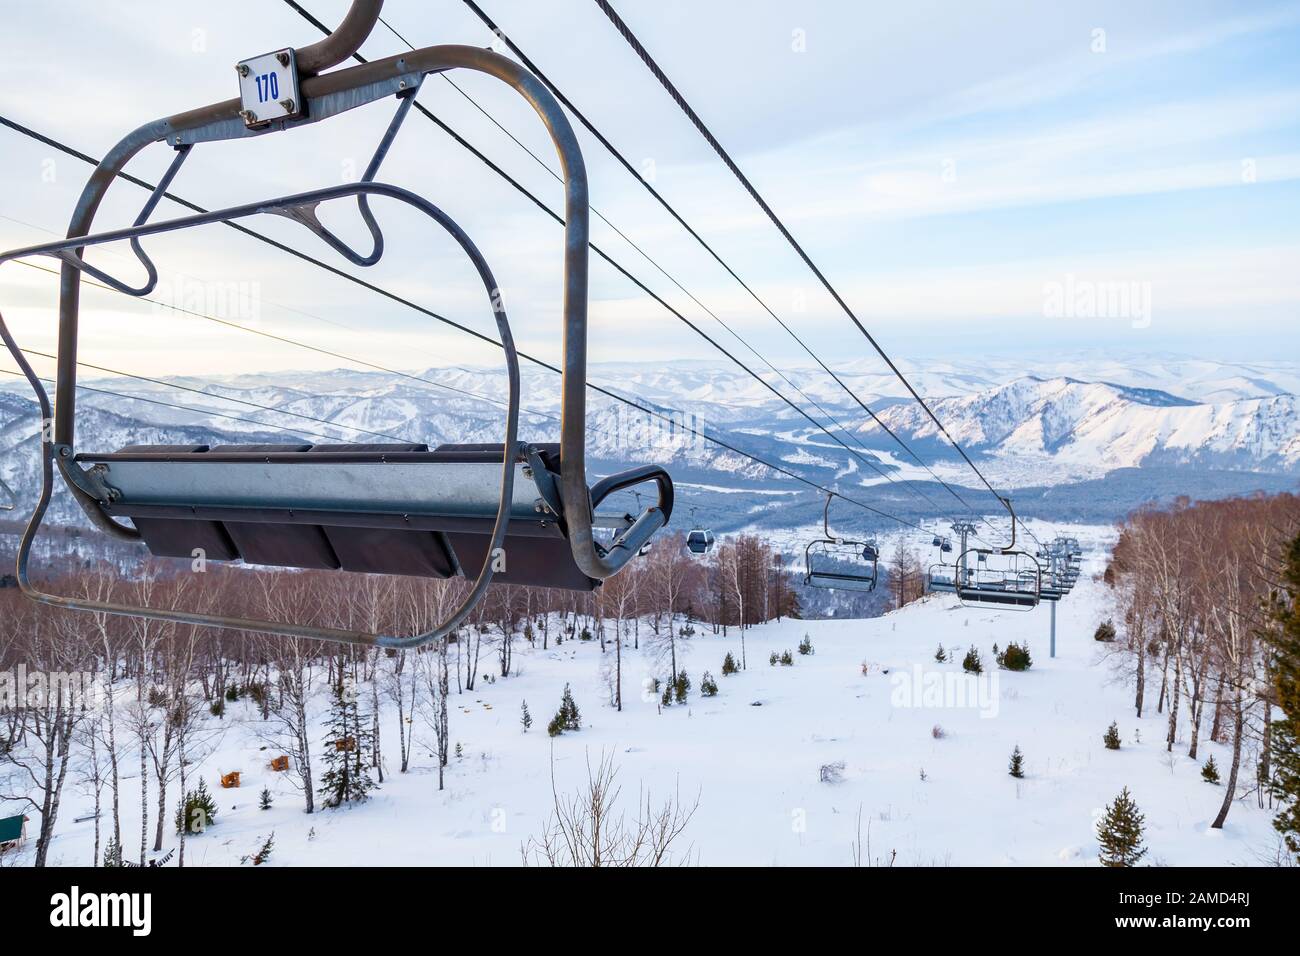 Eine Skilift-Sessellbahn mit einer Kabine, die an einem Kabel aufgehängt ist, in der Menschen mit Skiern und Snowboards auf einem Hintergrund von Bergen sitzen, Bäume mit Sno Stockfoto